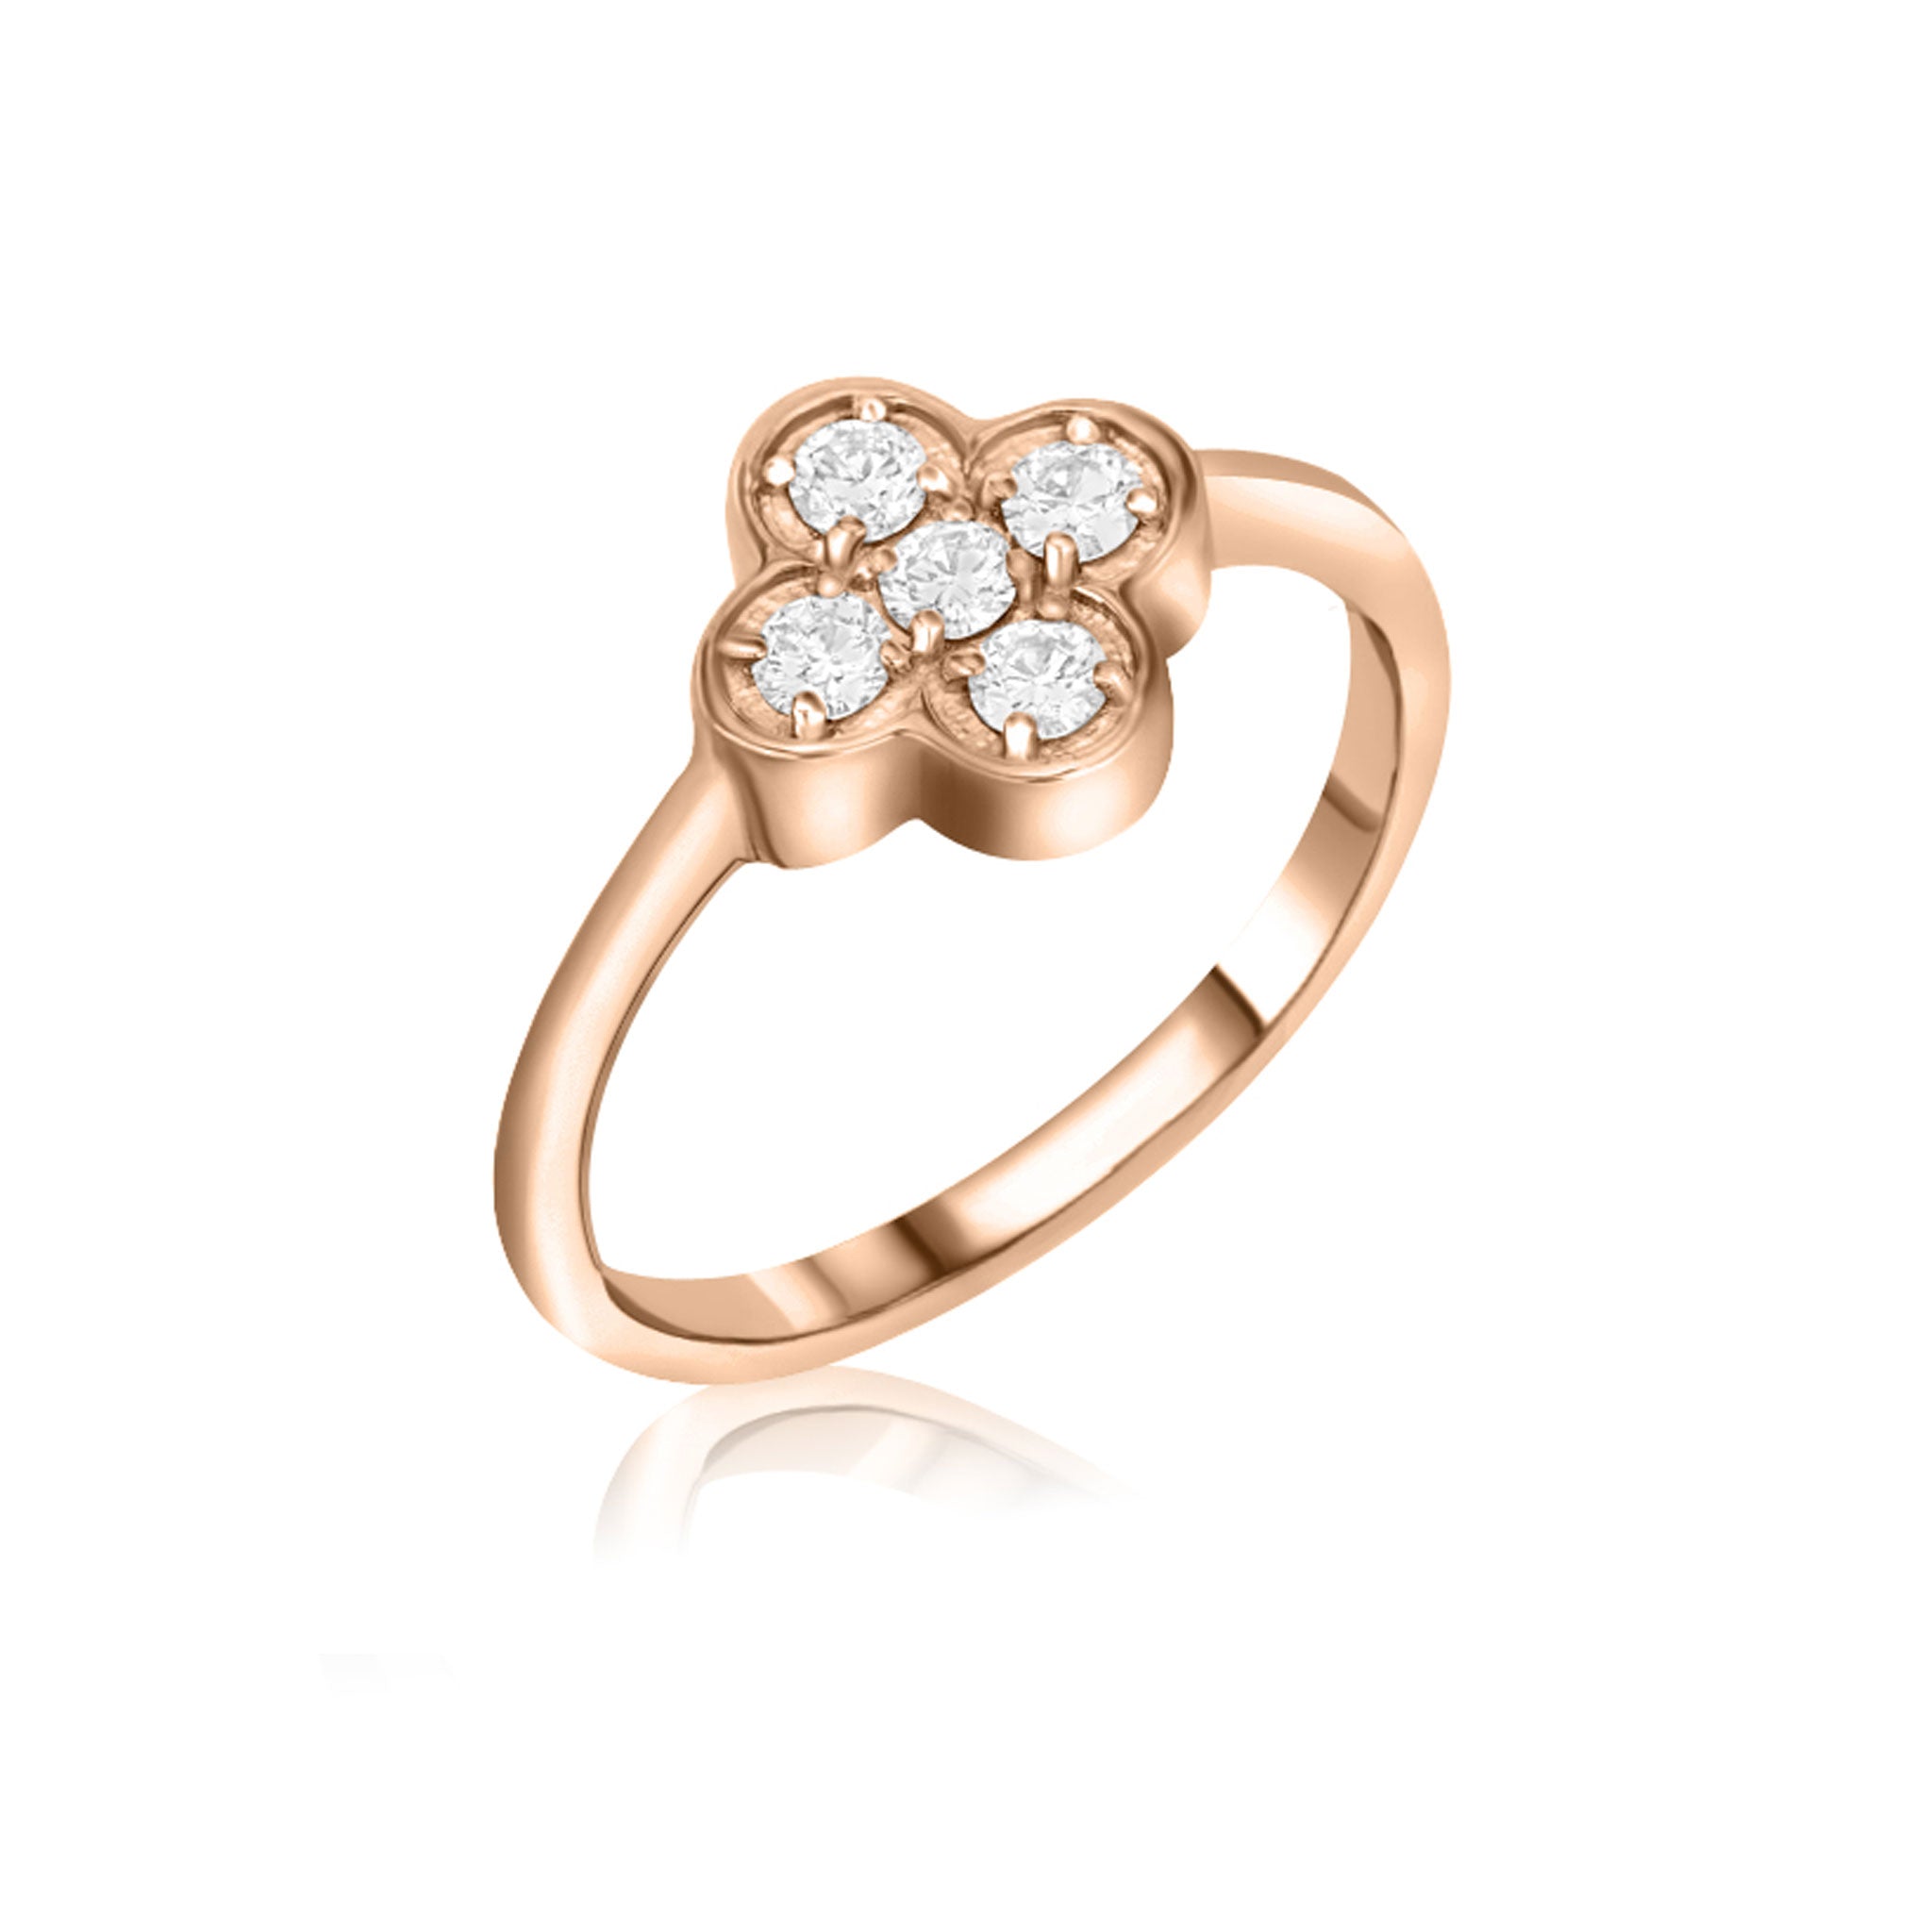 Value Medallion - Settings Design Ring- Natural Diamonds